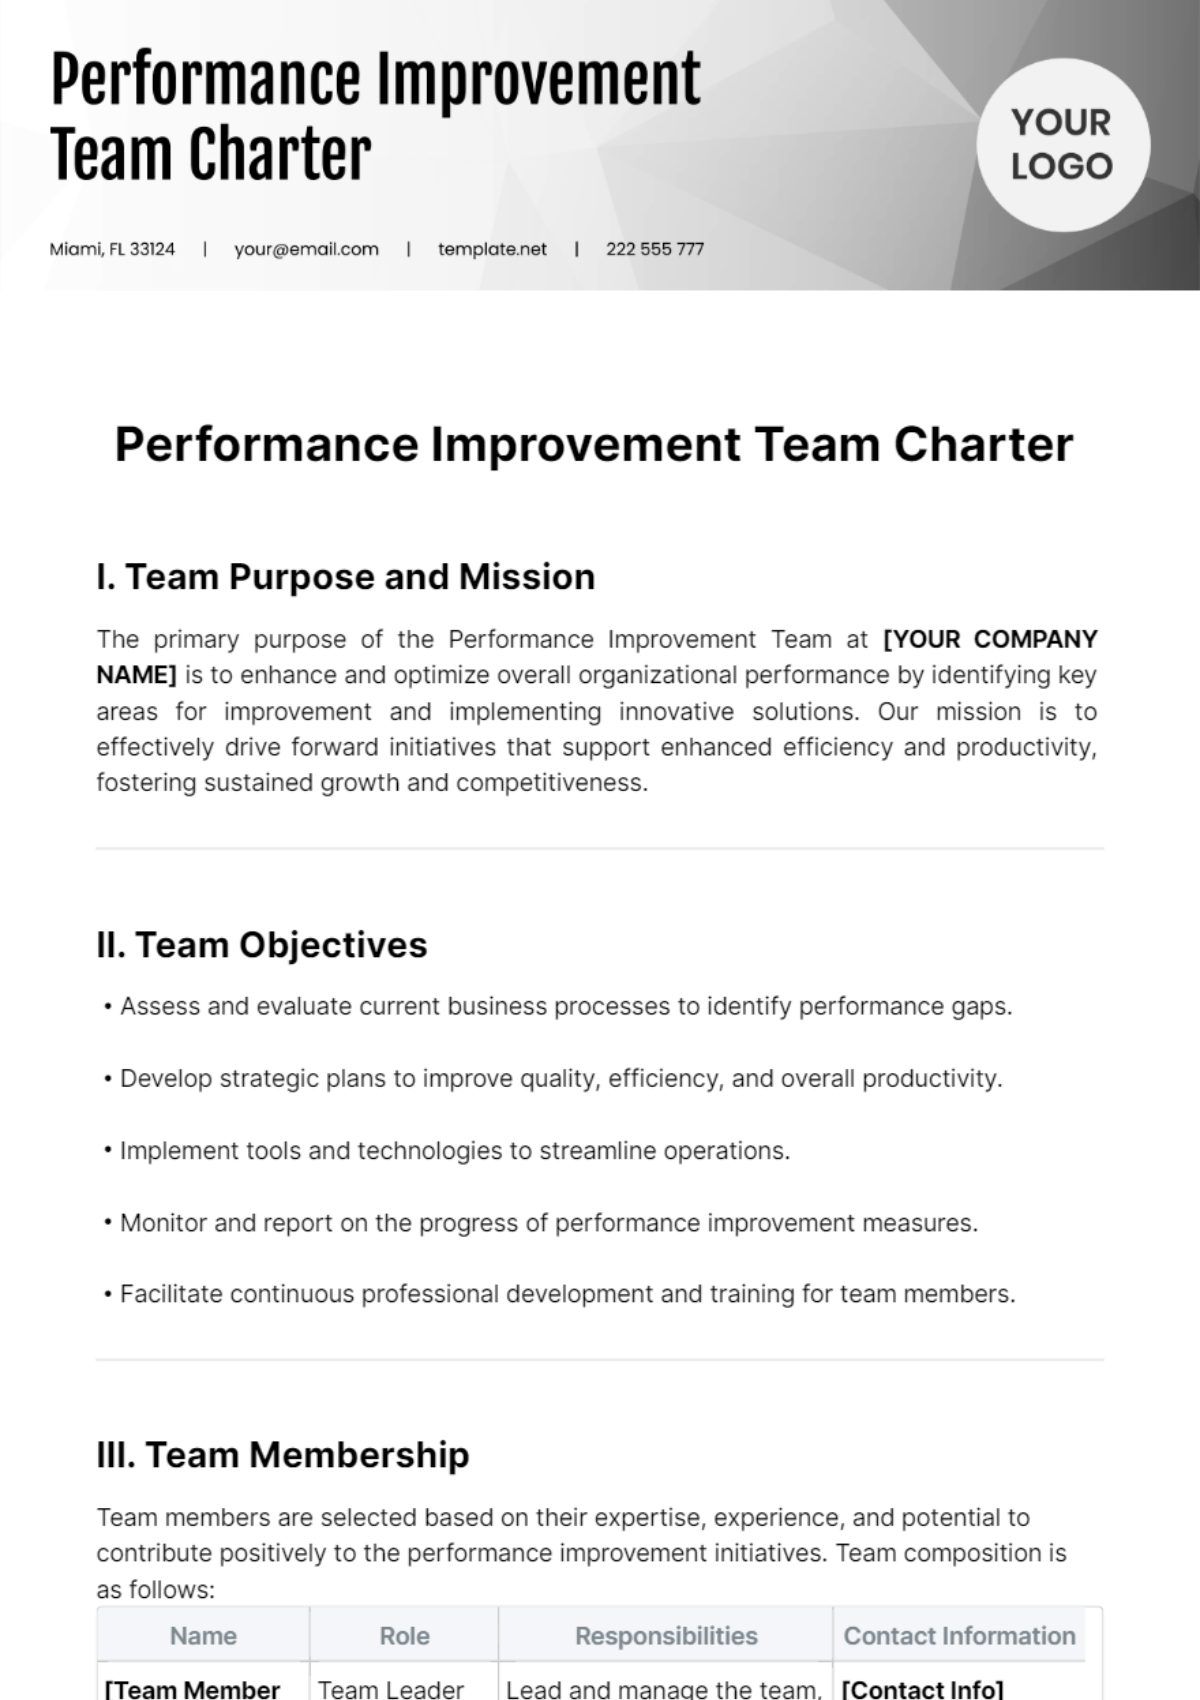 Performance Improvement Team Charter Template